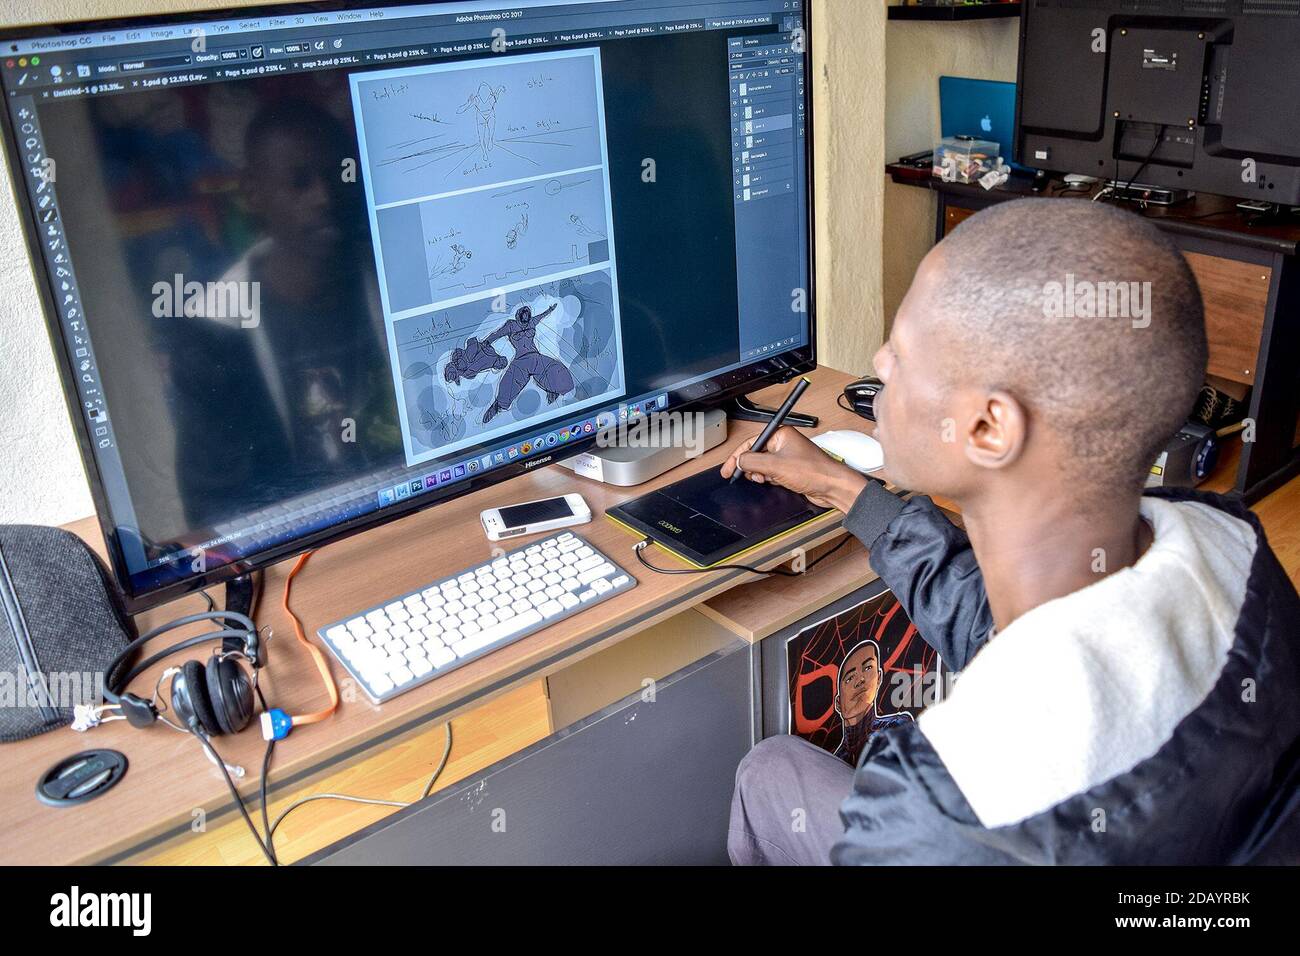 Eugene Ramirez Mapondera arbeitet an einigen seiner Figuren in den Büros von Comexposed, The Harare, Zimbabwe, einem Unternehmen, das er mitgegründet hat, um Animatoren zusammenzubringen. Stockfoto